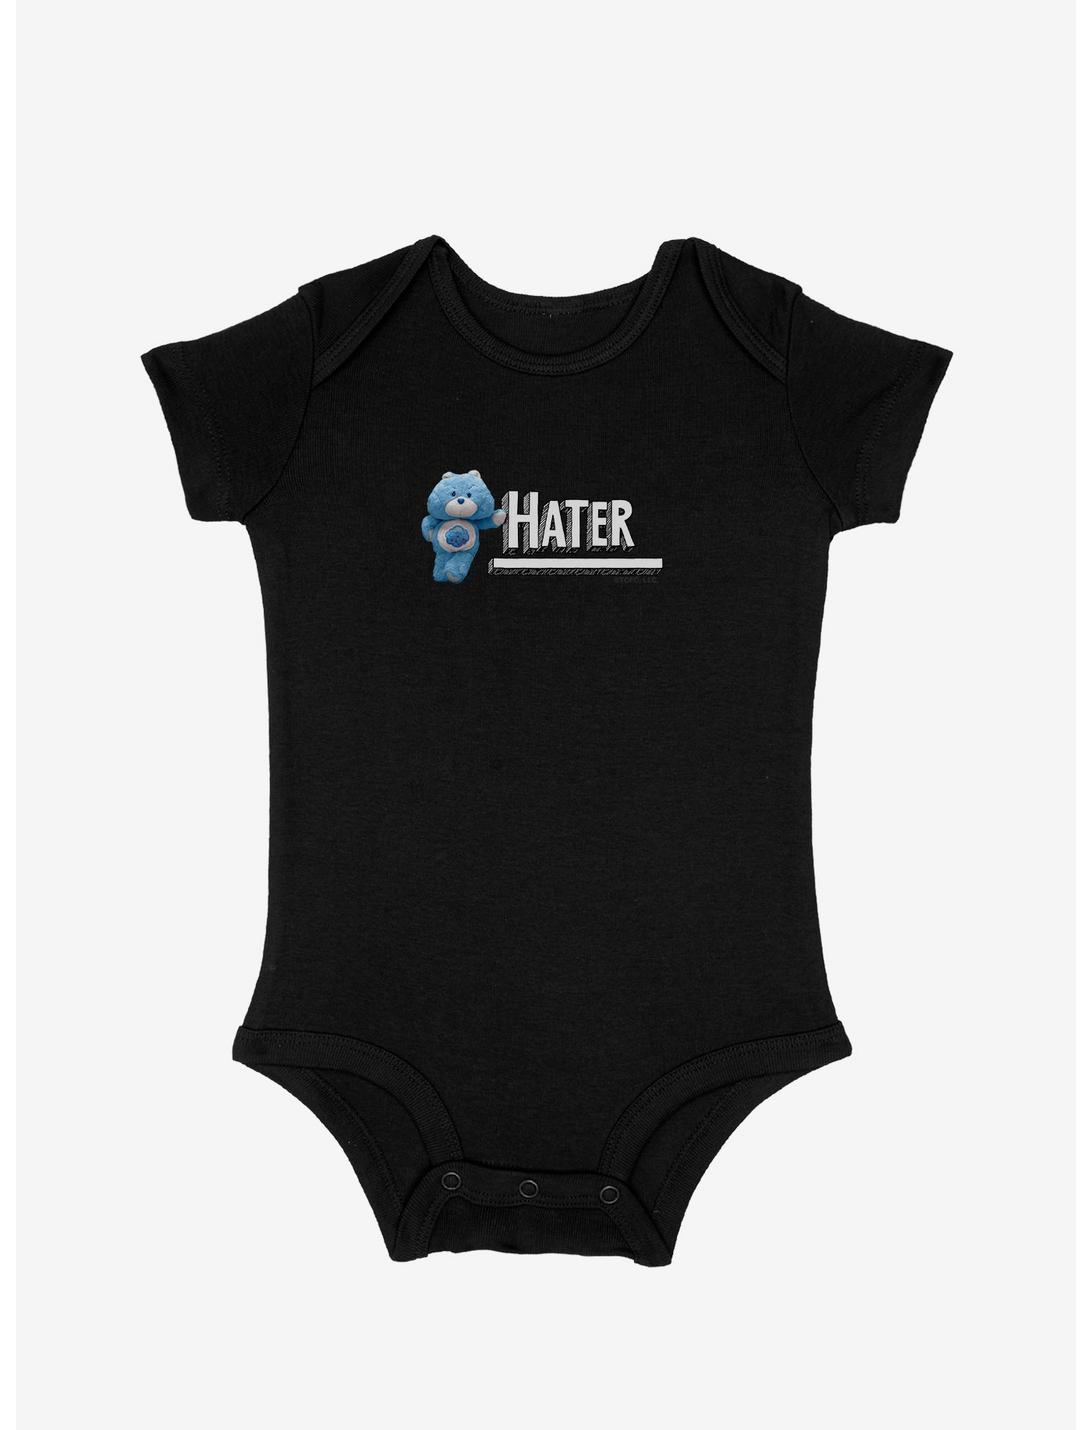 Care Bears Hater Infant Bodysuit, , hi-res